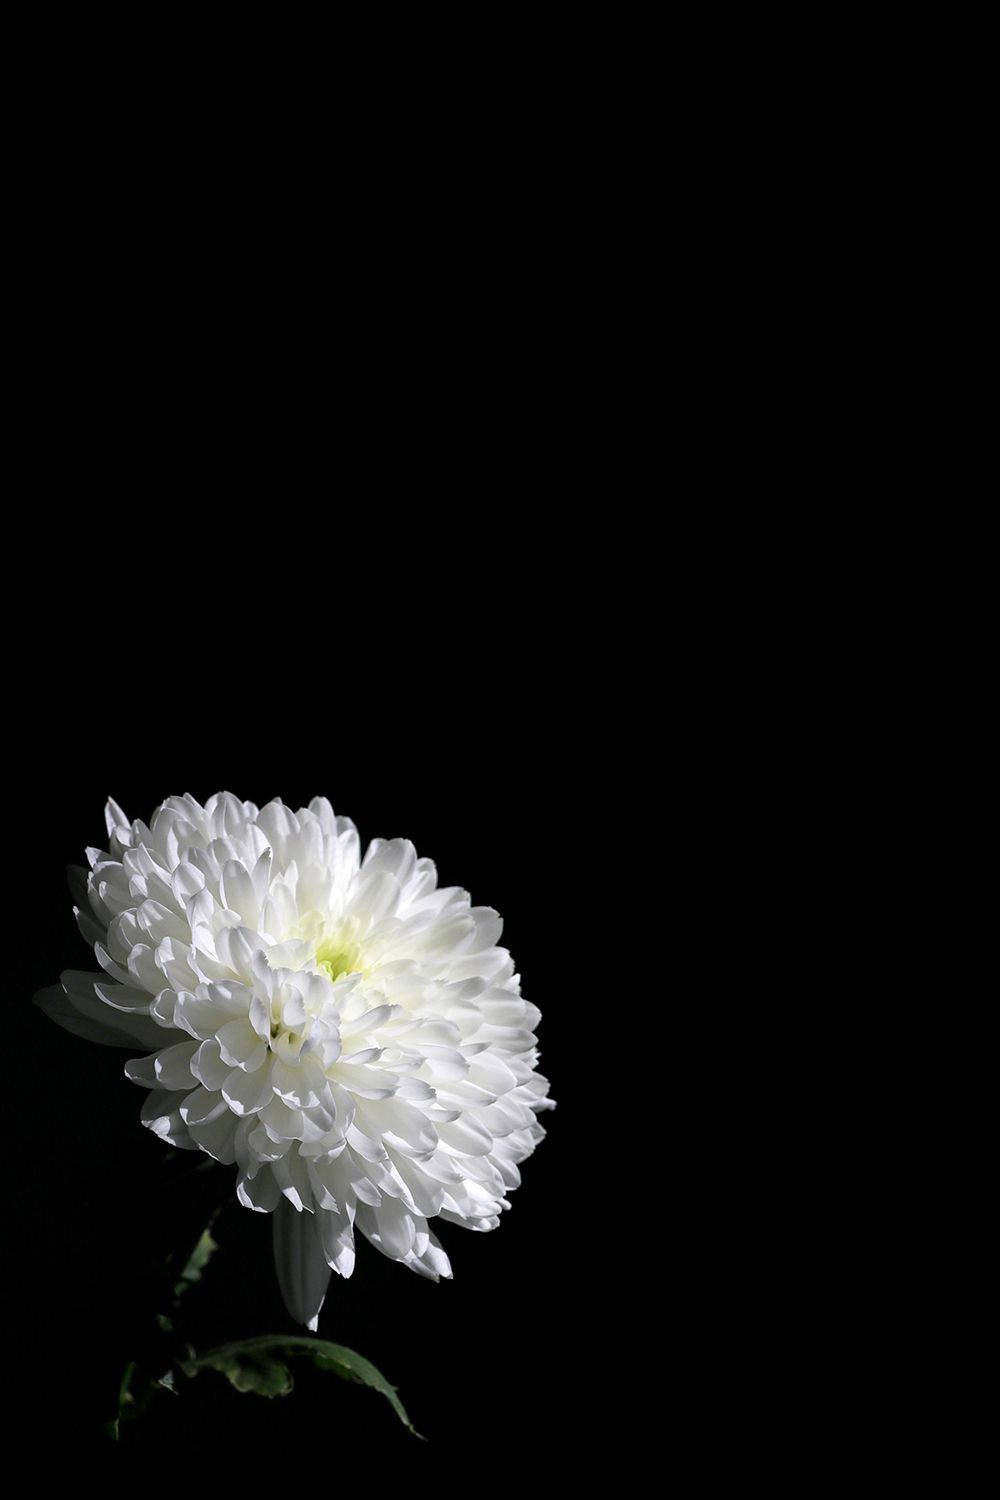 White Floral On Dark Background